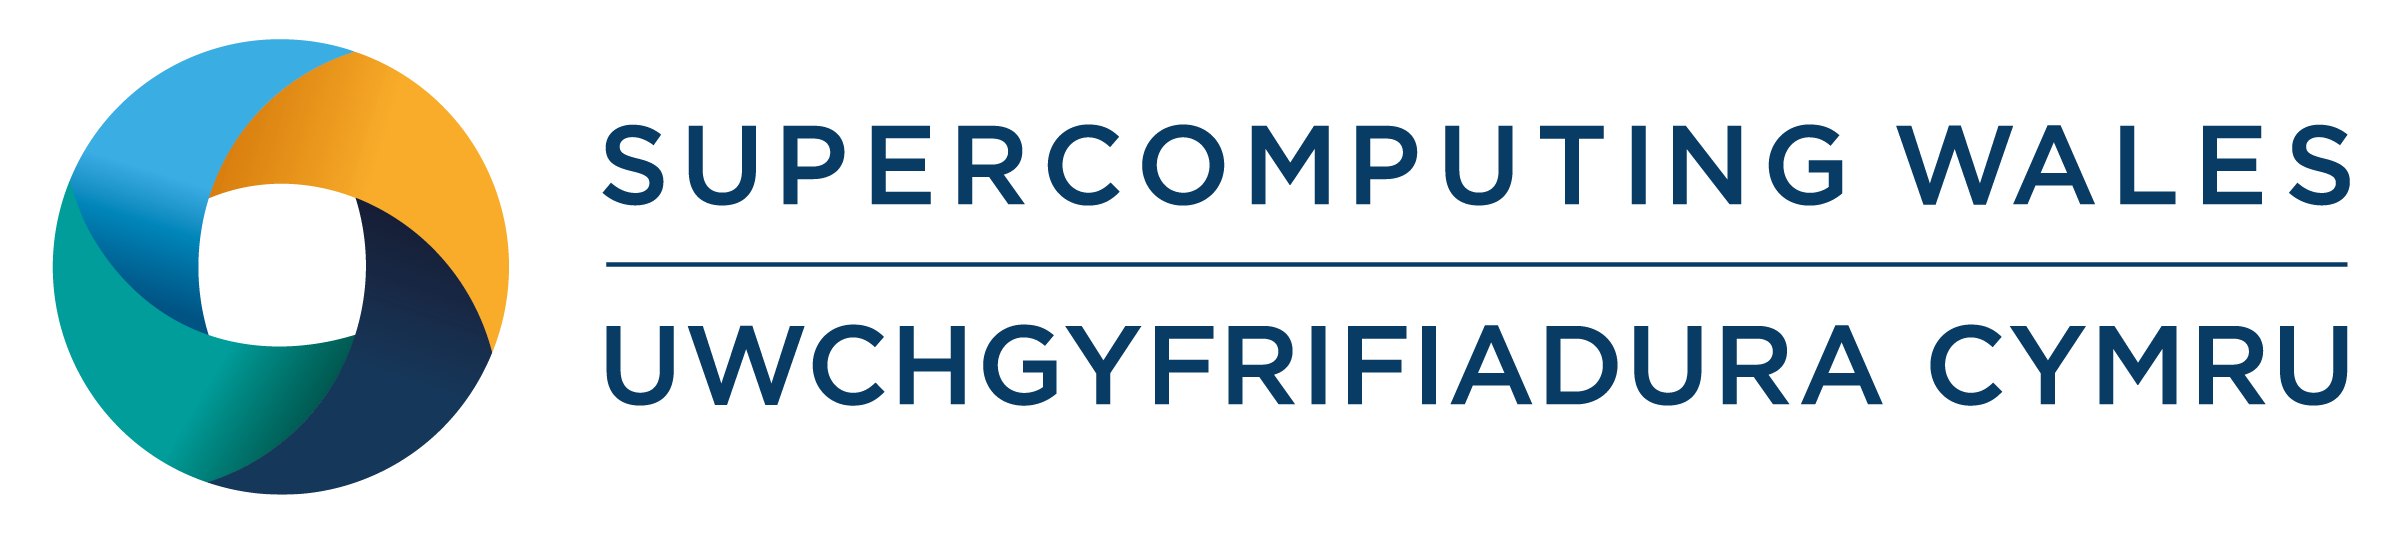  Supercomputing Wales